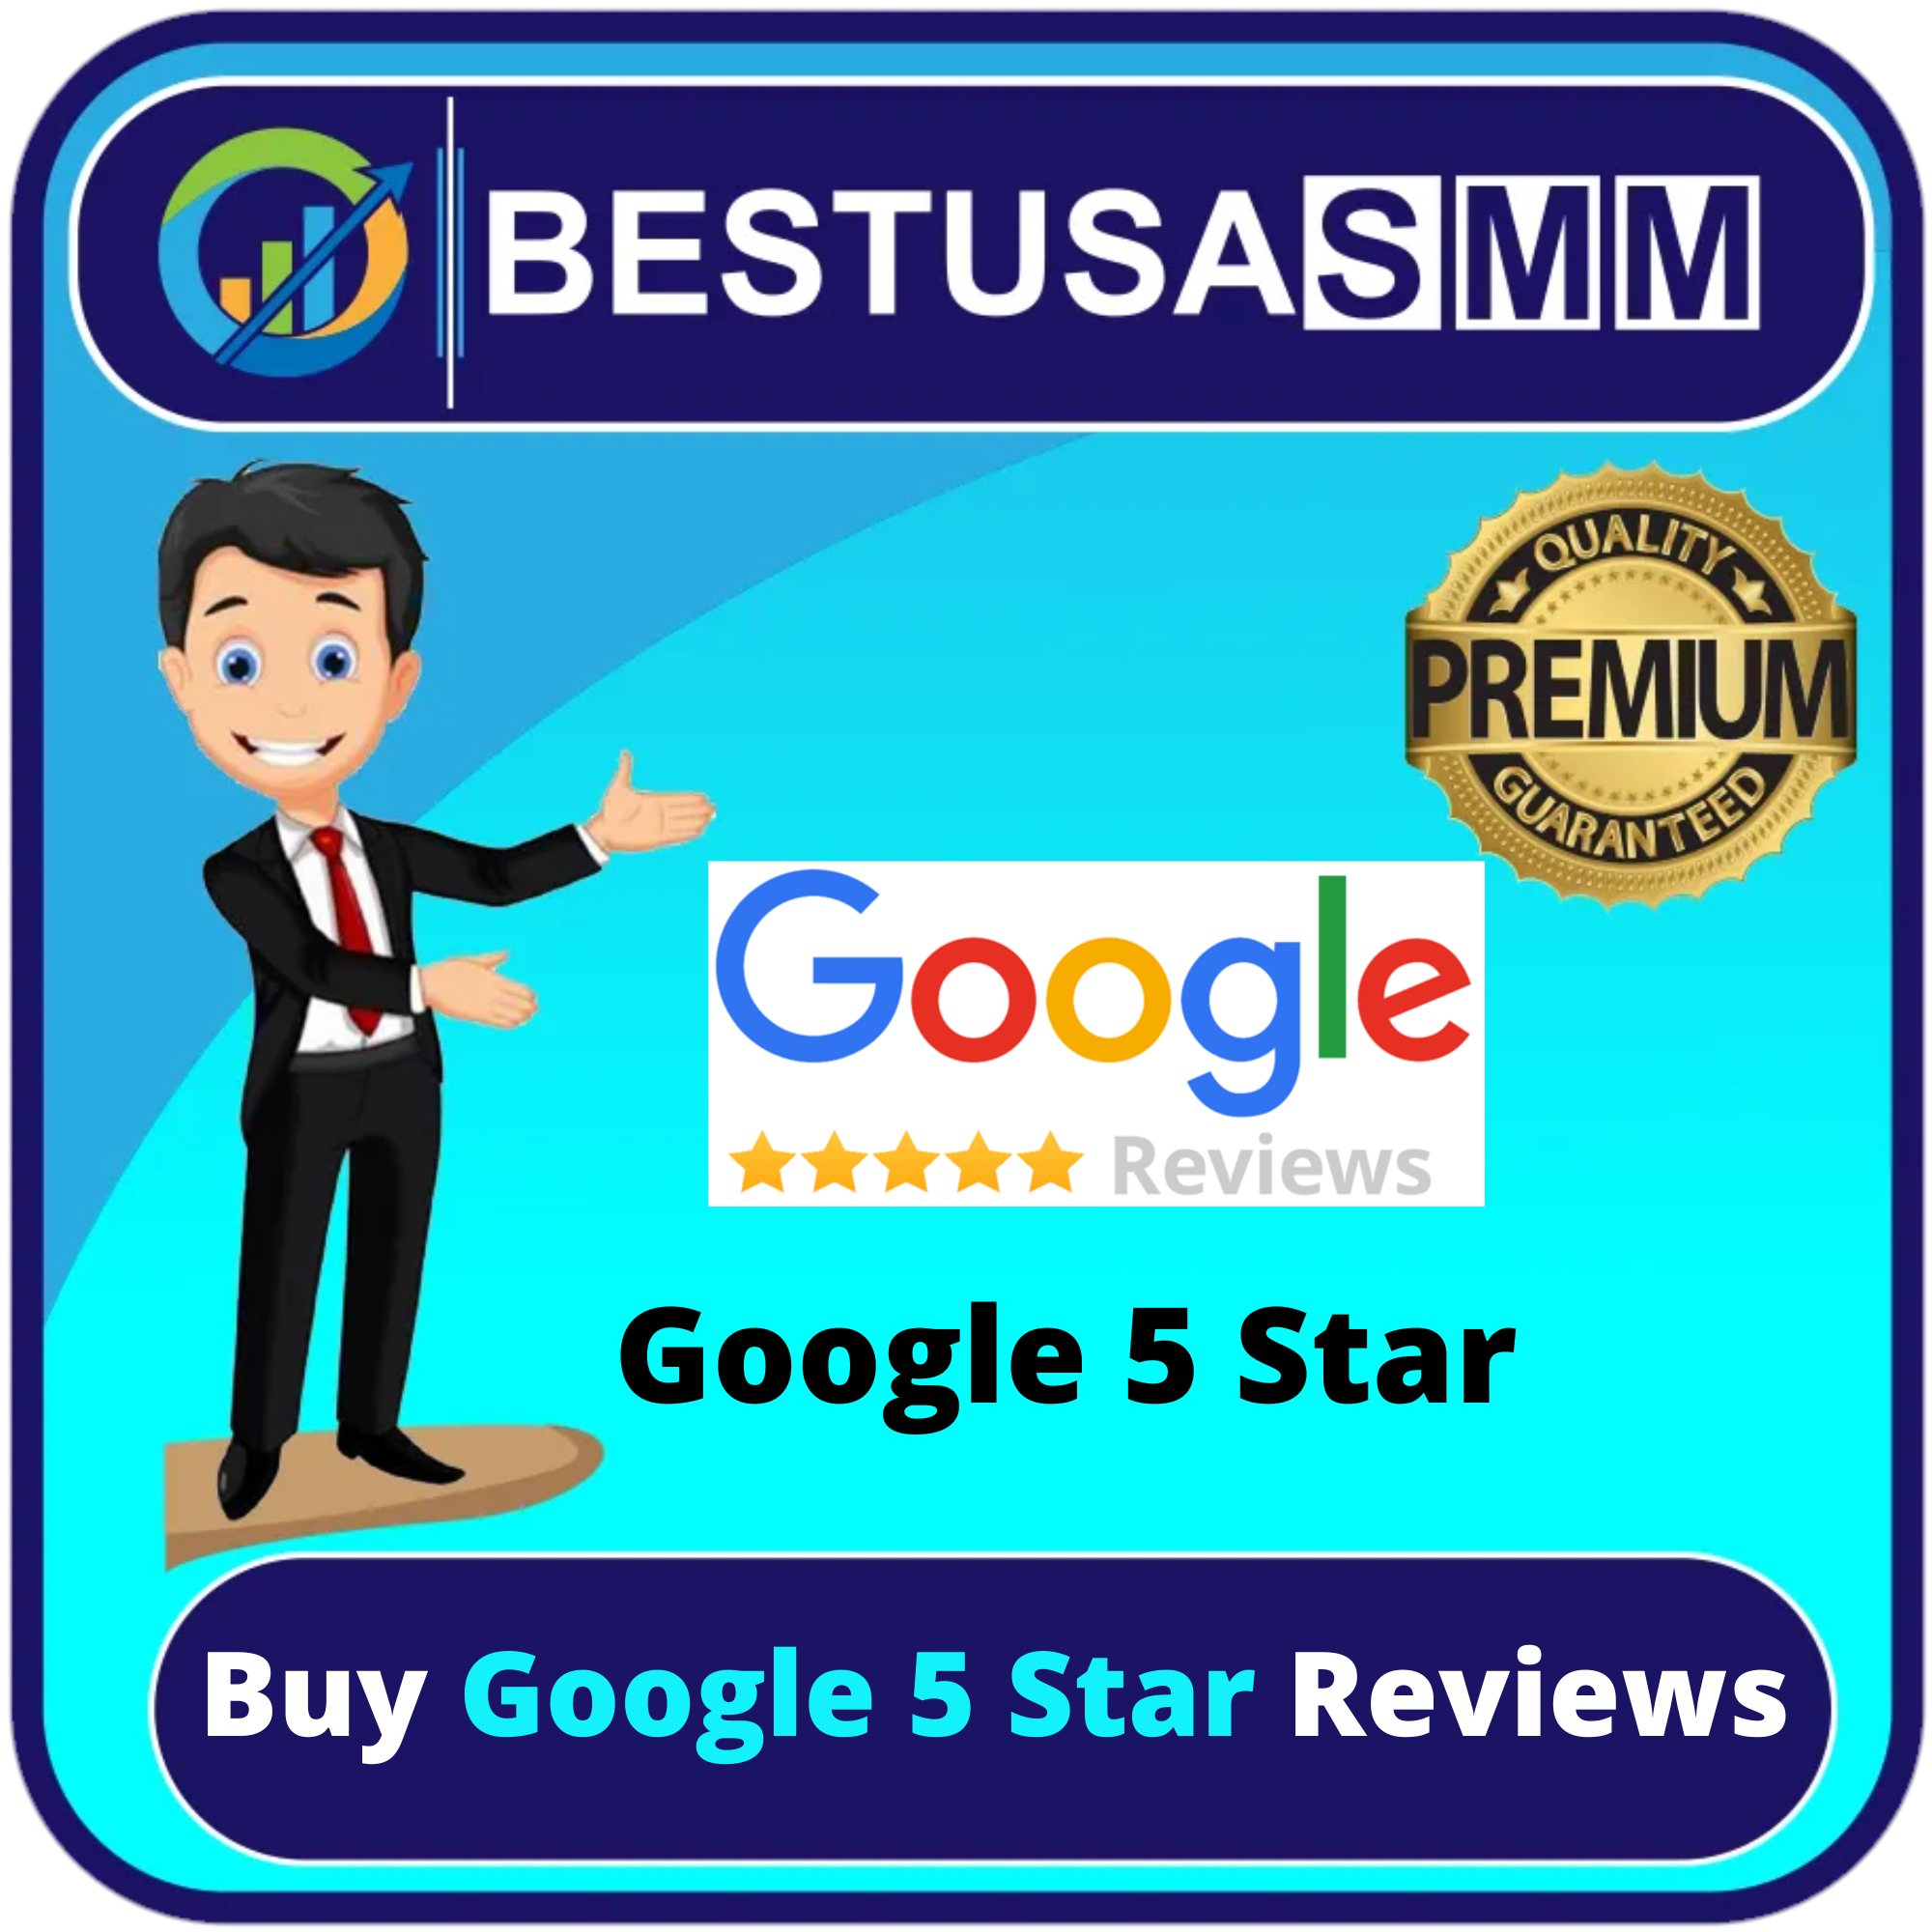 Buy Google 5 Star Reviews - 100% non-drop real safe Reviews